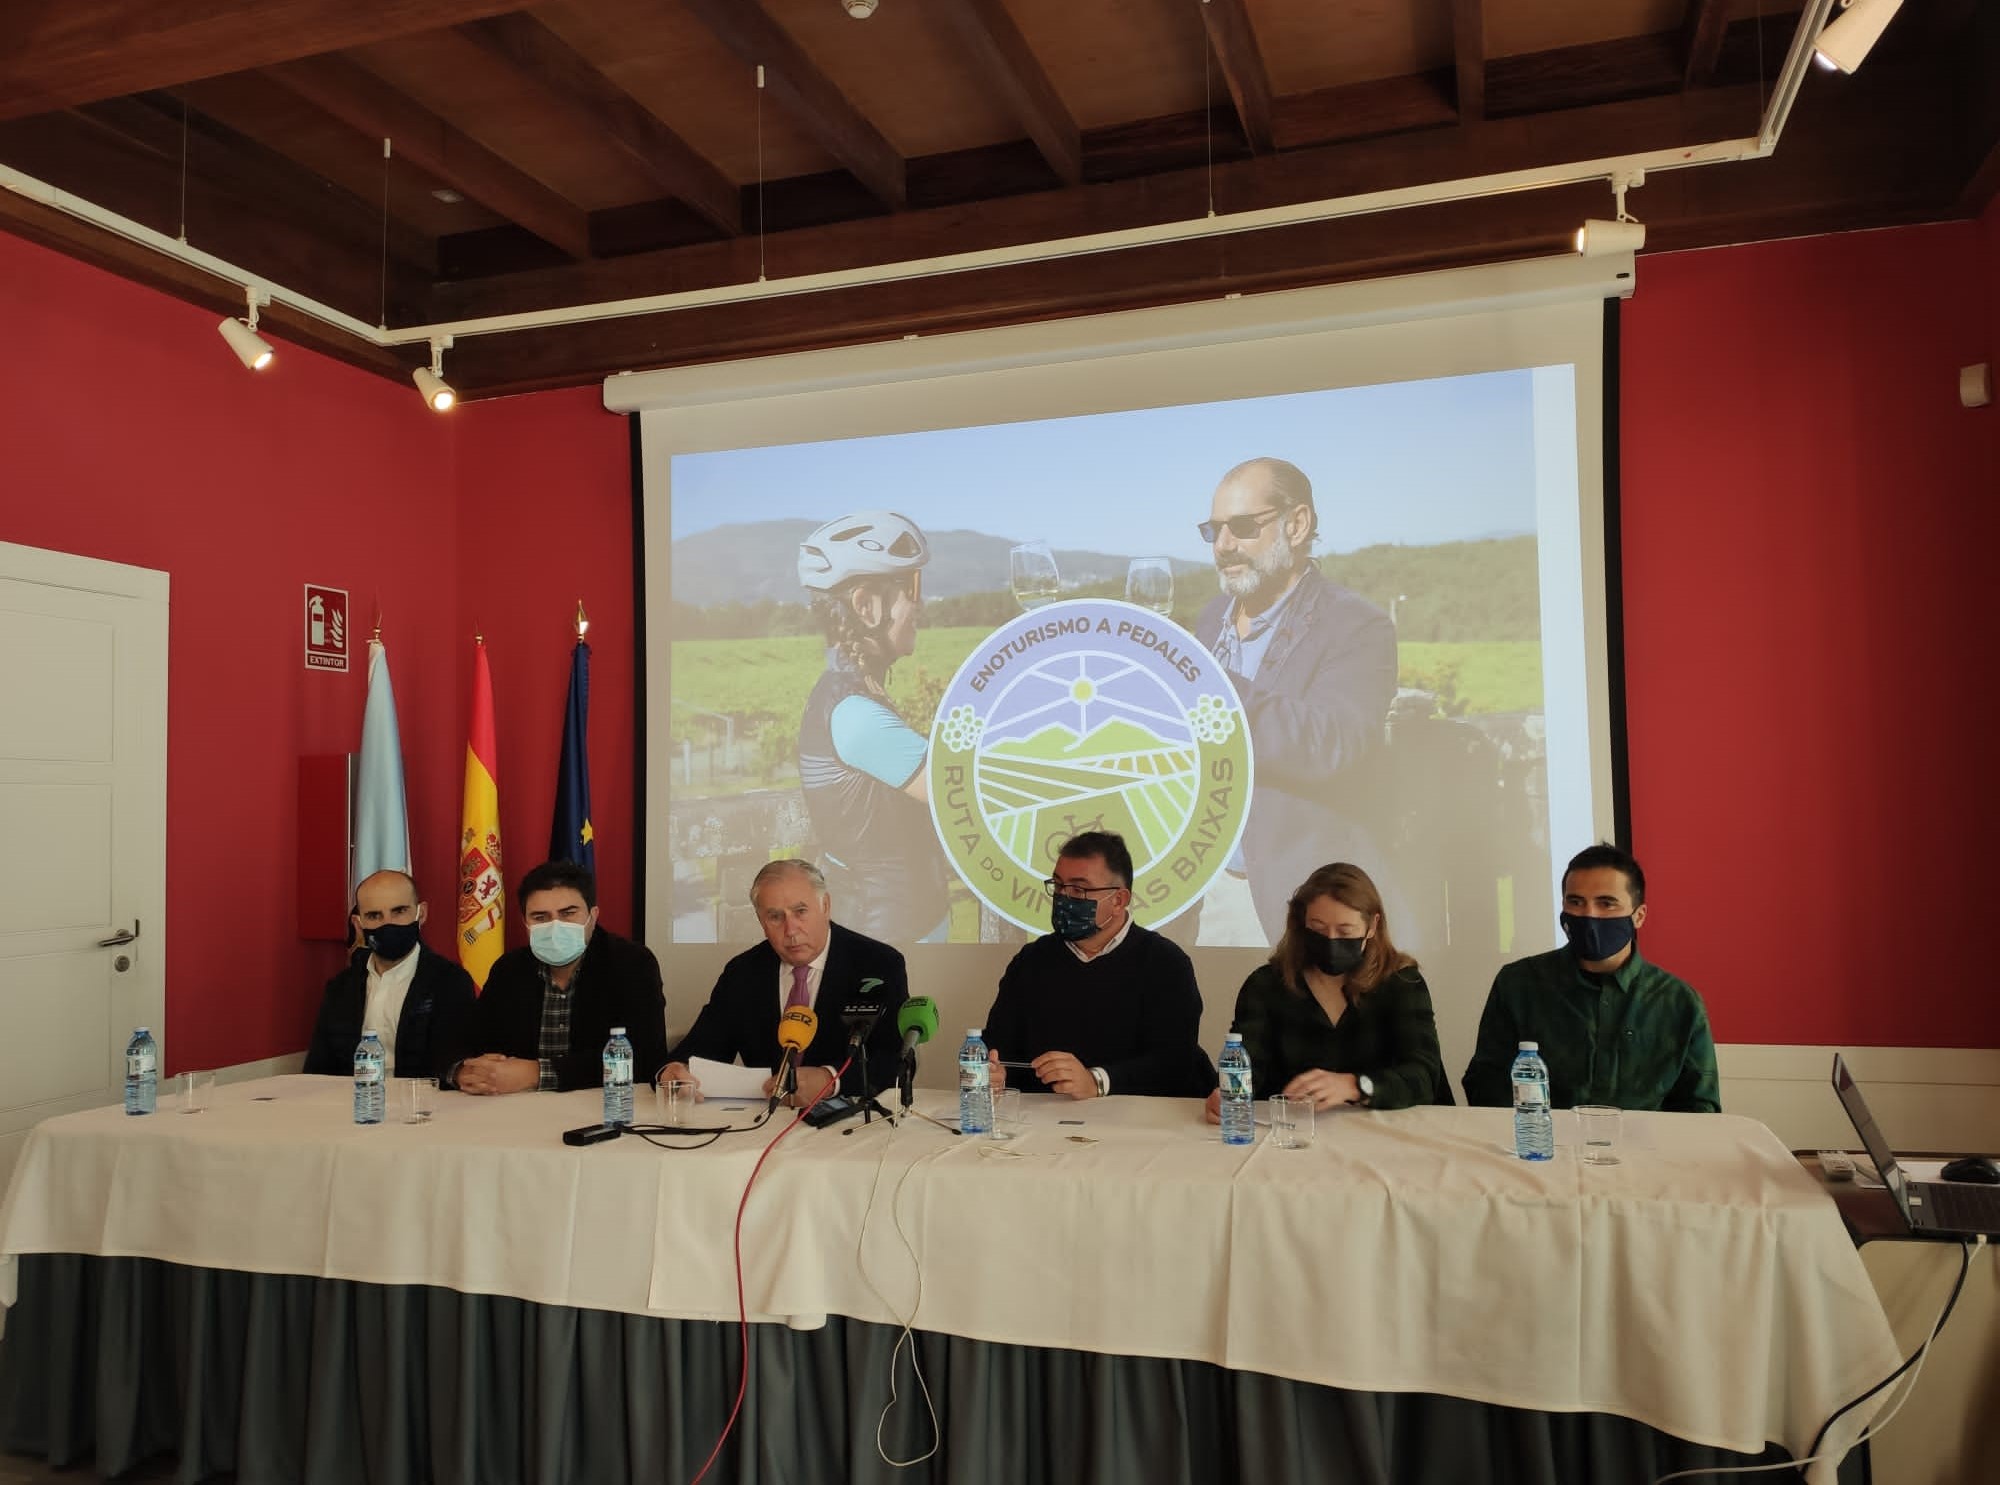 La Ruta do Viño Rías Baixas da a conocer su proyecto de cicloturismo “Enoturismo a pedales” a través de la experiencia de cuatro embajadores